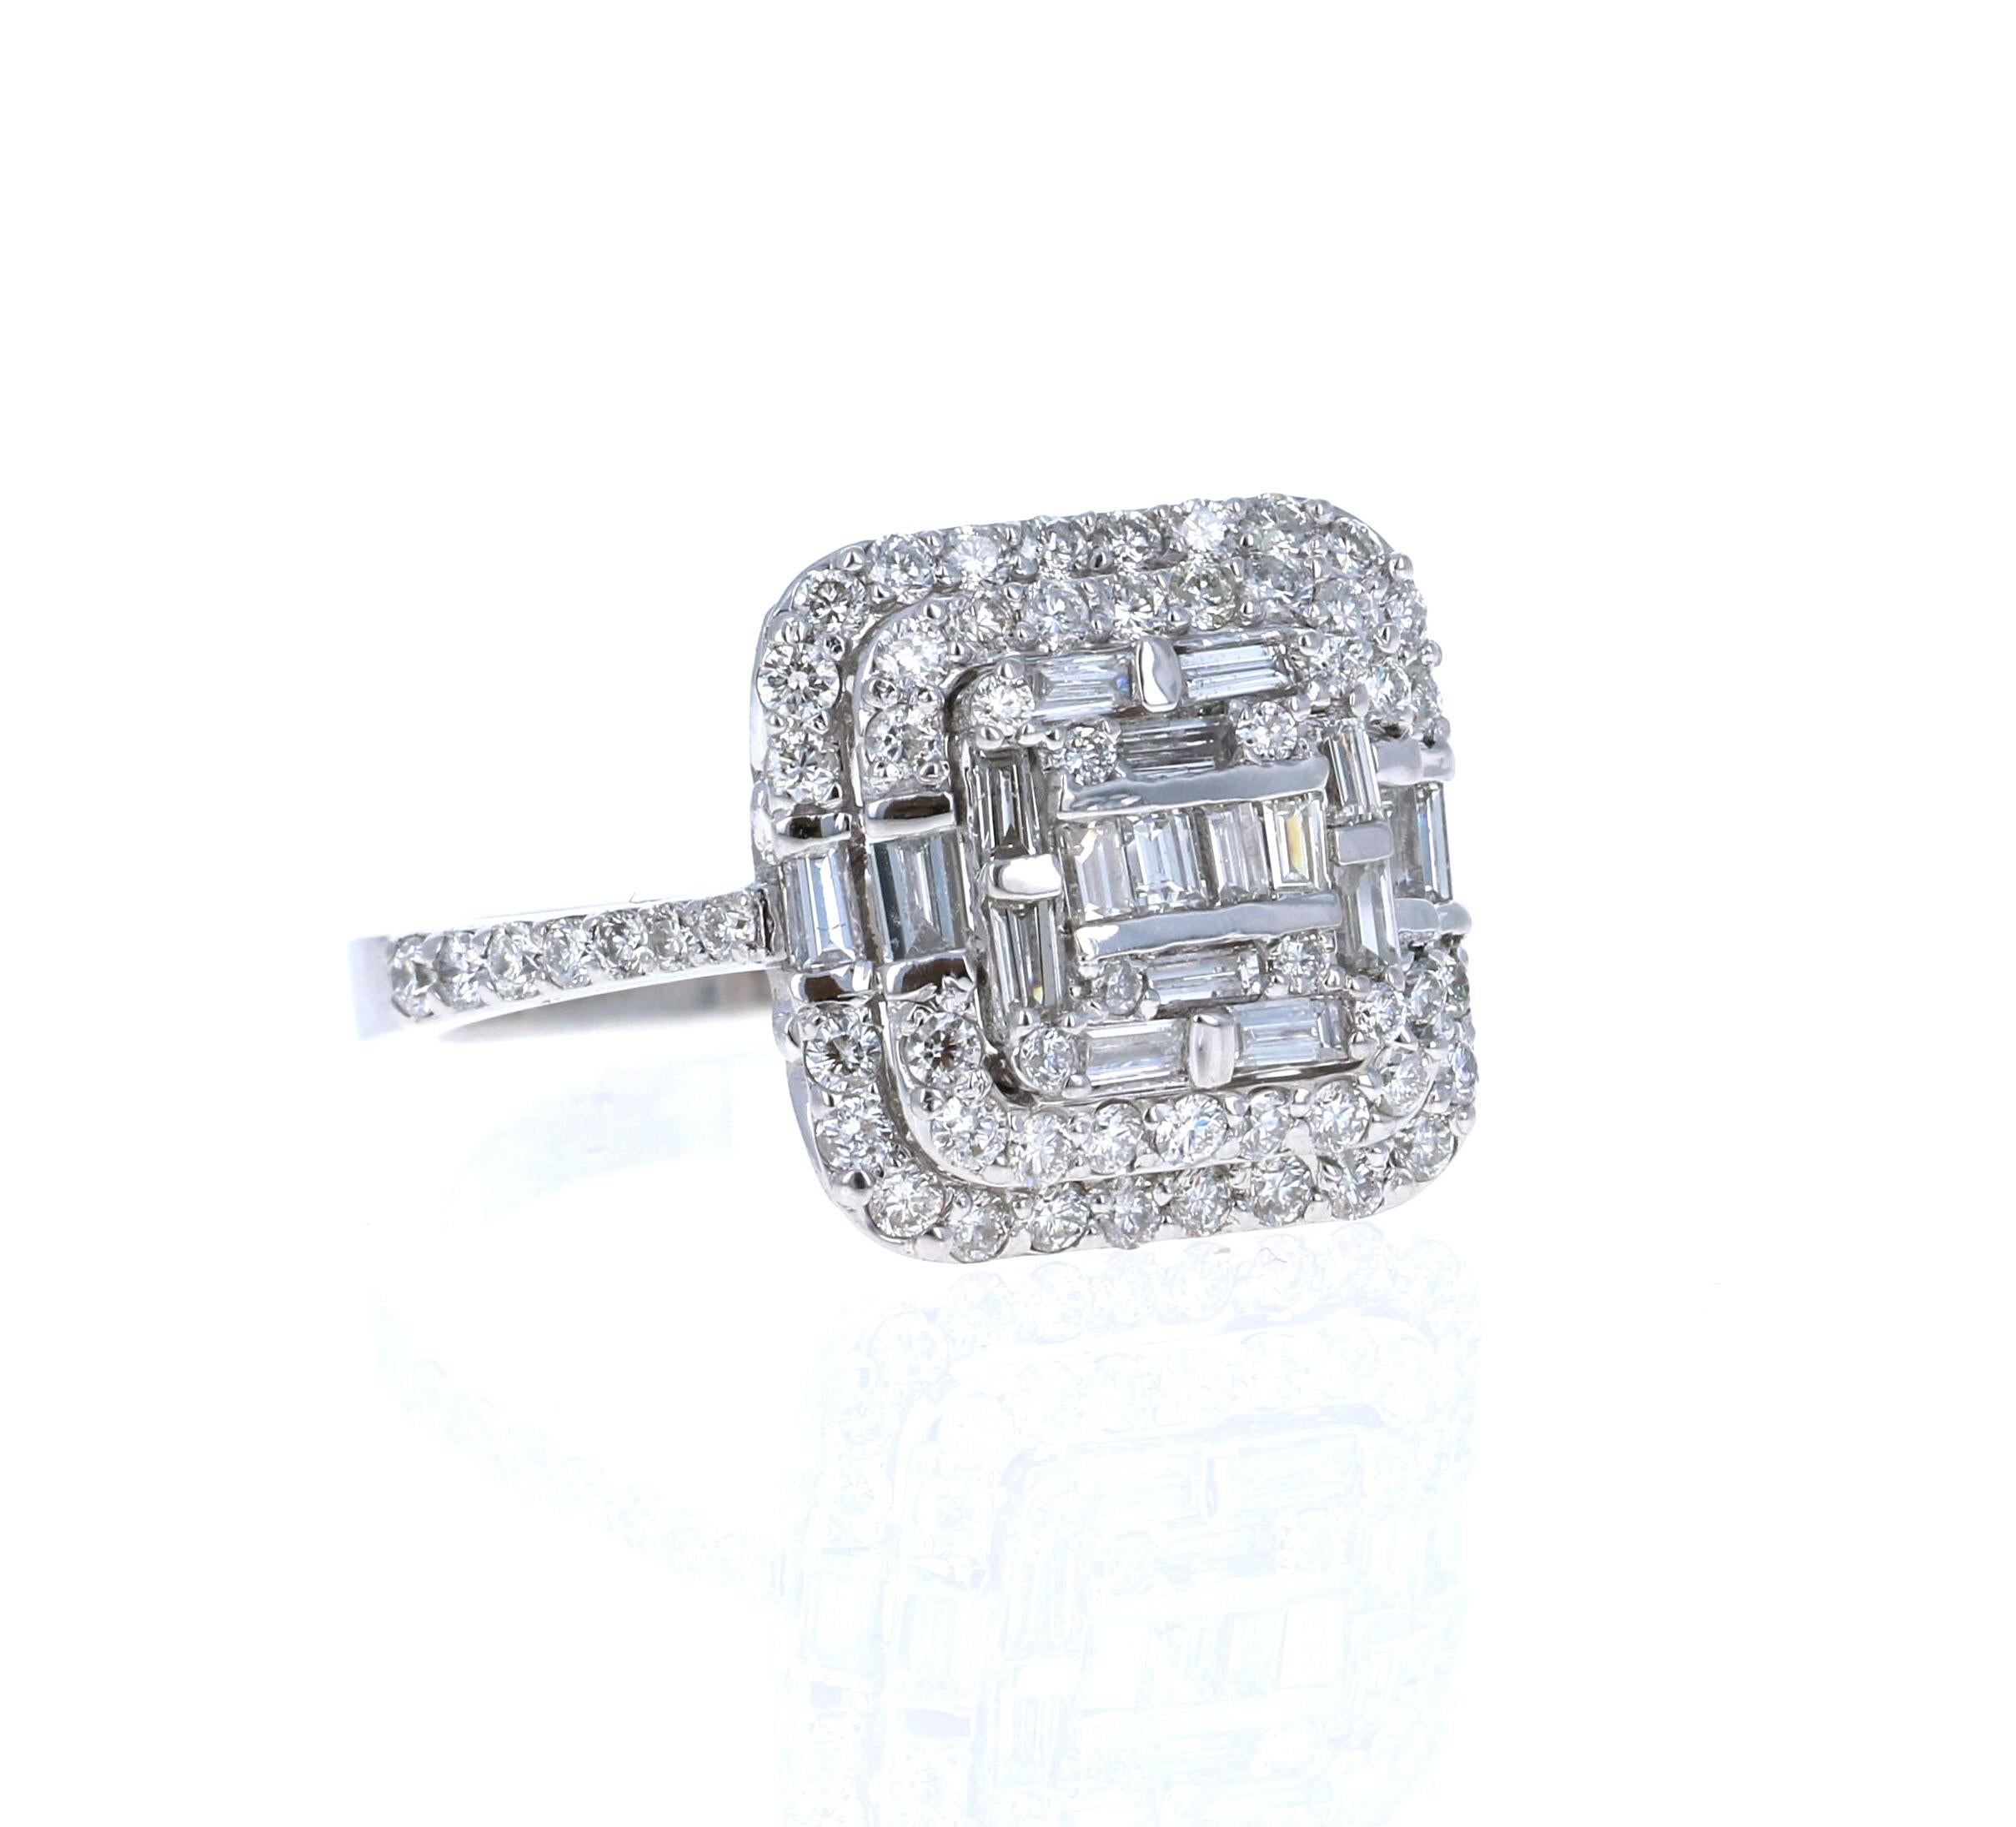 Dieser wunderschöne Cocktail-Ring wird Ihre Accessoire-Kollektion aufwerten!   Die vielen Diamanten in diesem Ring verleihen ihm ein großes und königliches Aussehen!
Er hat 64 Brillanten im Rundschliff mit einem Gewicht von 0,82 Karat und 18